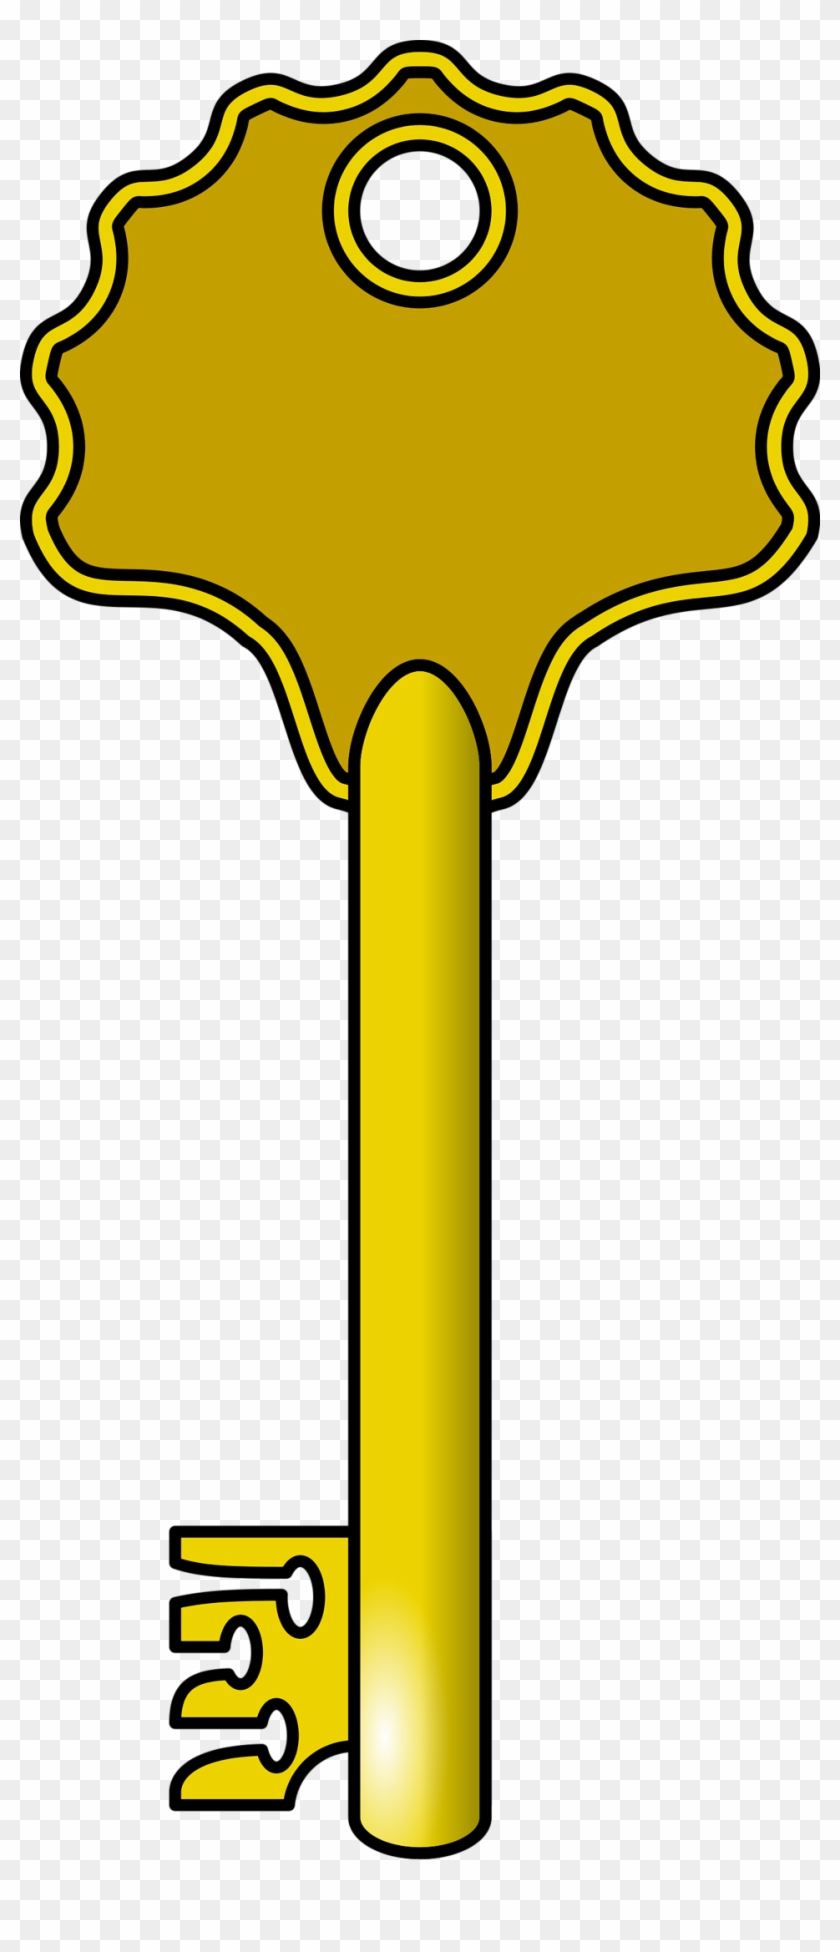 Key - Golden Key Clip Art #55489